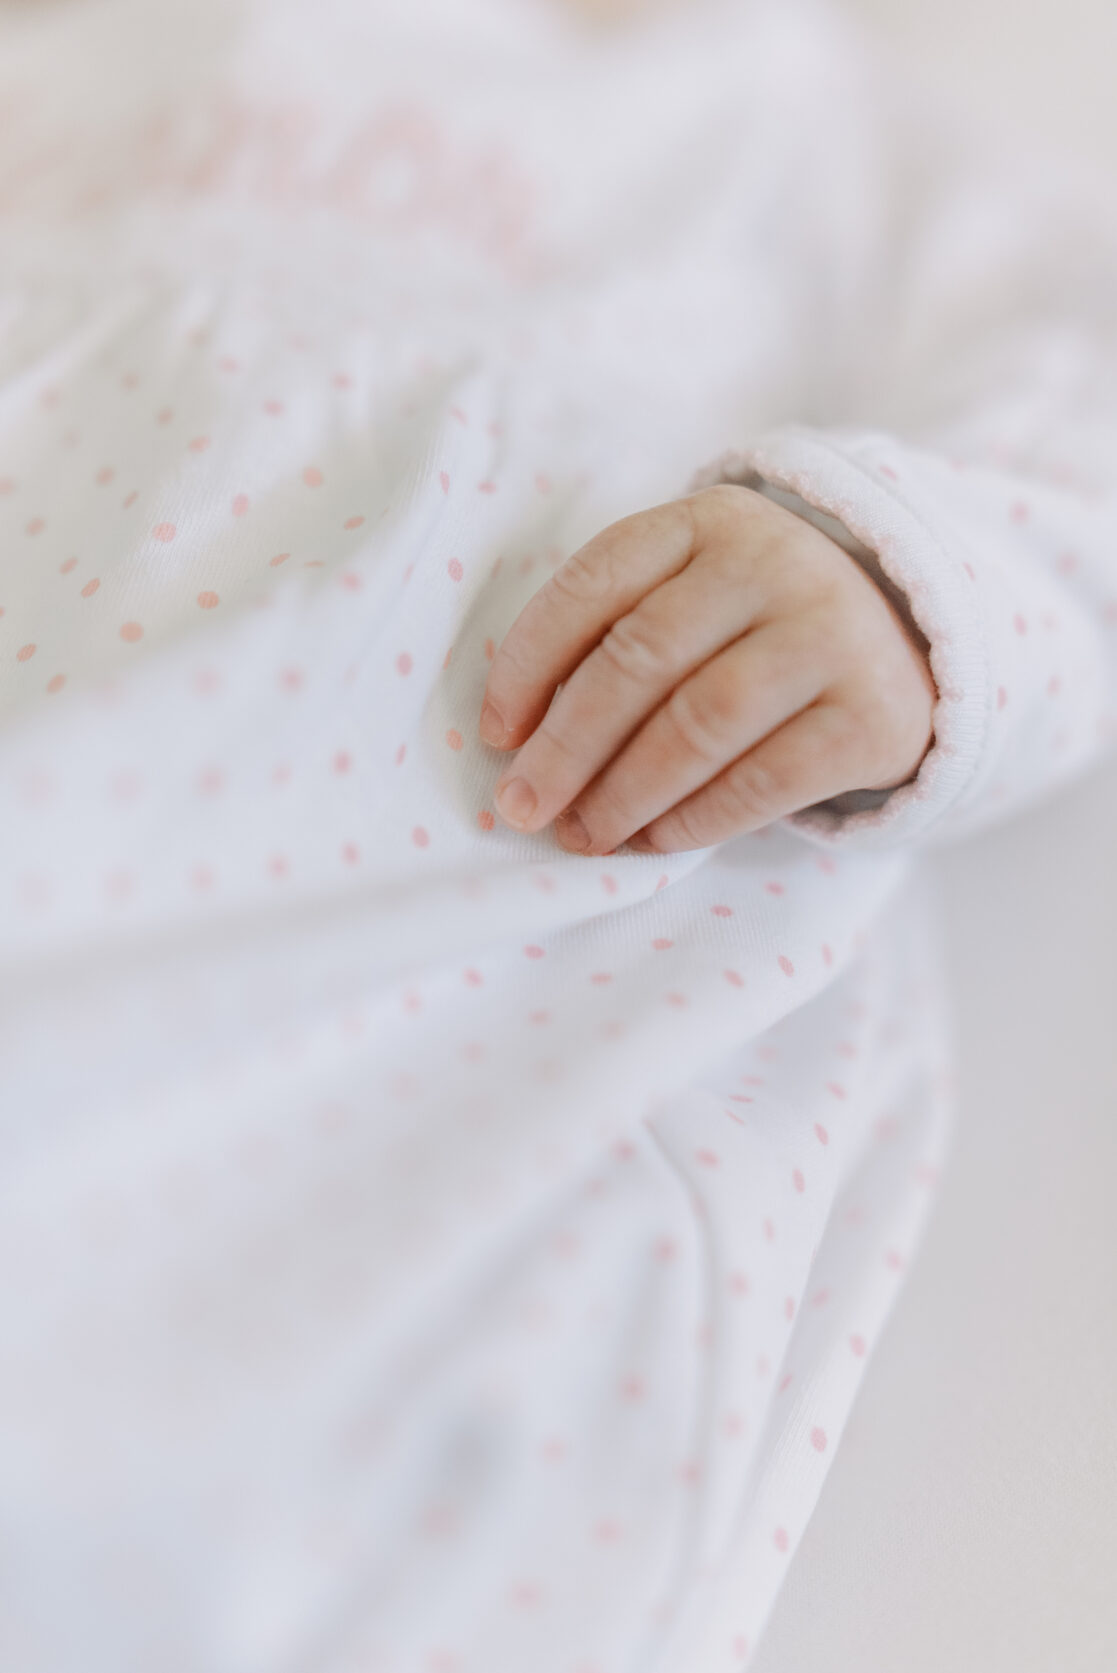 newborn baby hand close up